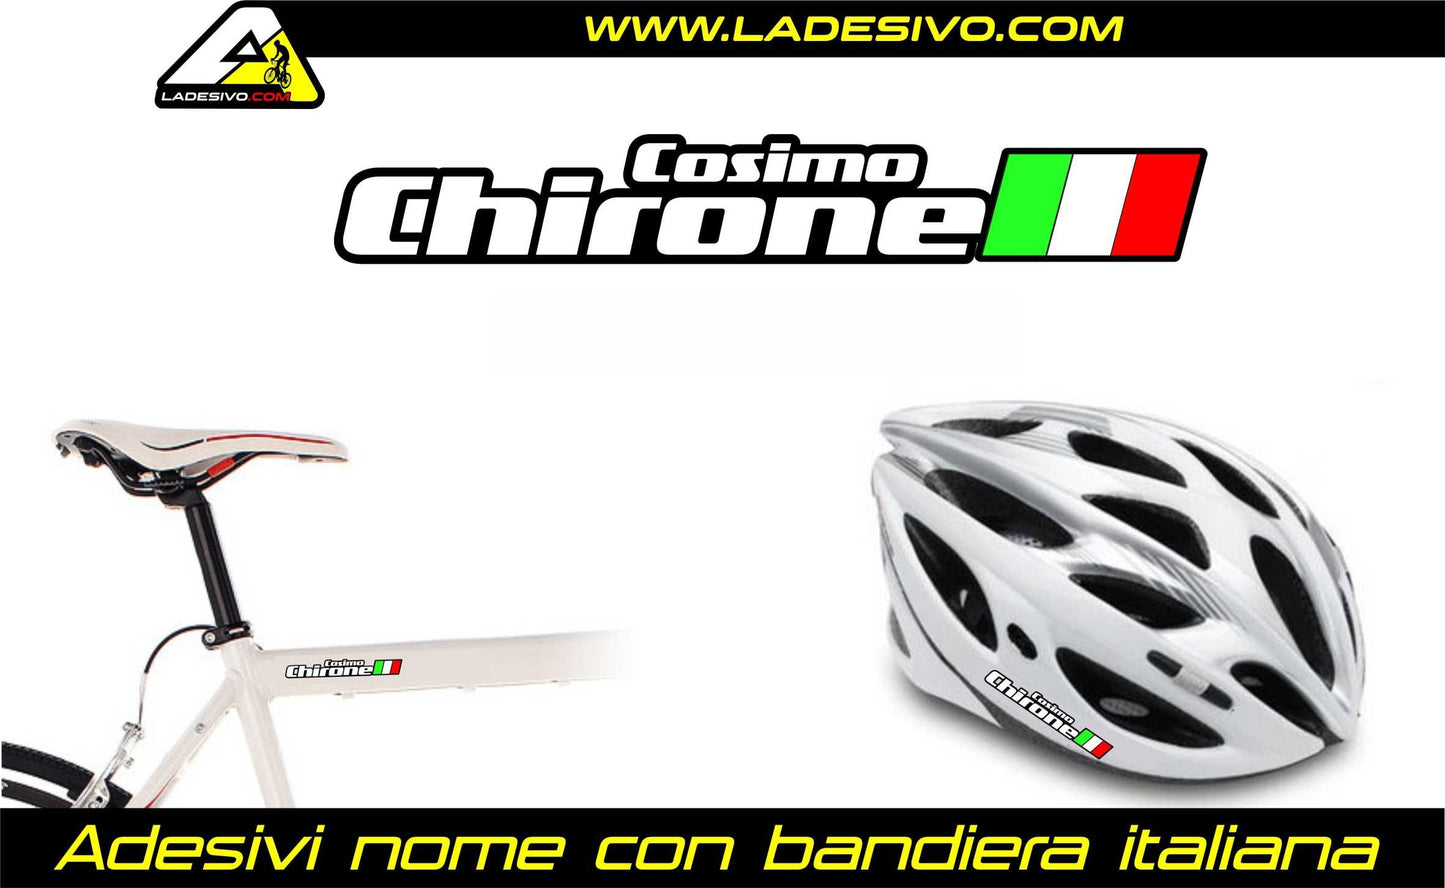 nome cognome nominativo adesivo stickers bandiera italiana 12 pezzi bici moto auto scooter name